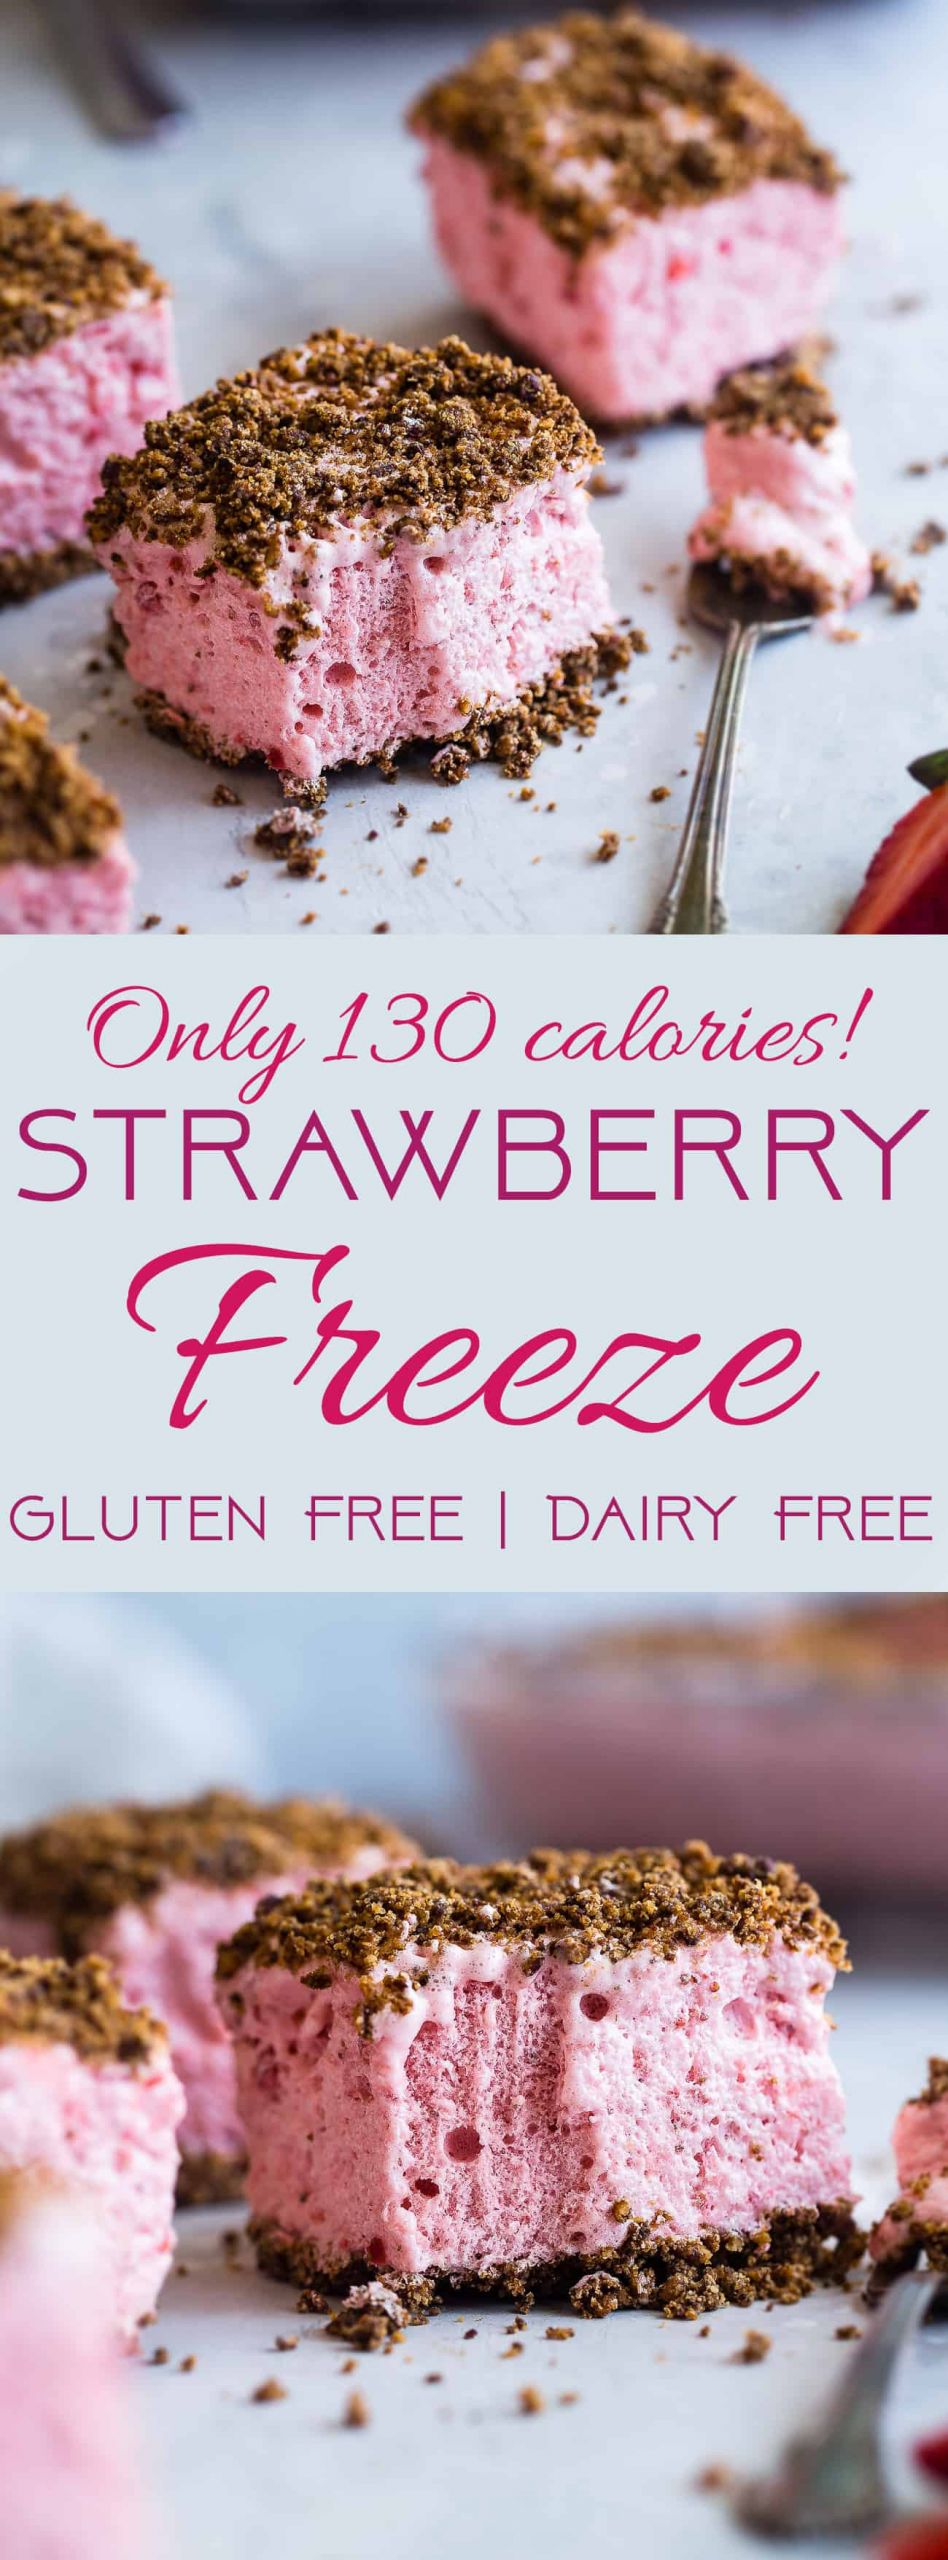 Quick Gluten Free Desserts
 Healthy Frozen Strawberry Dessert Recipe